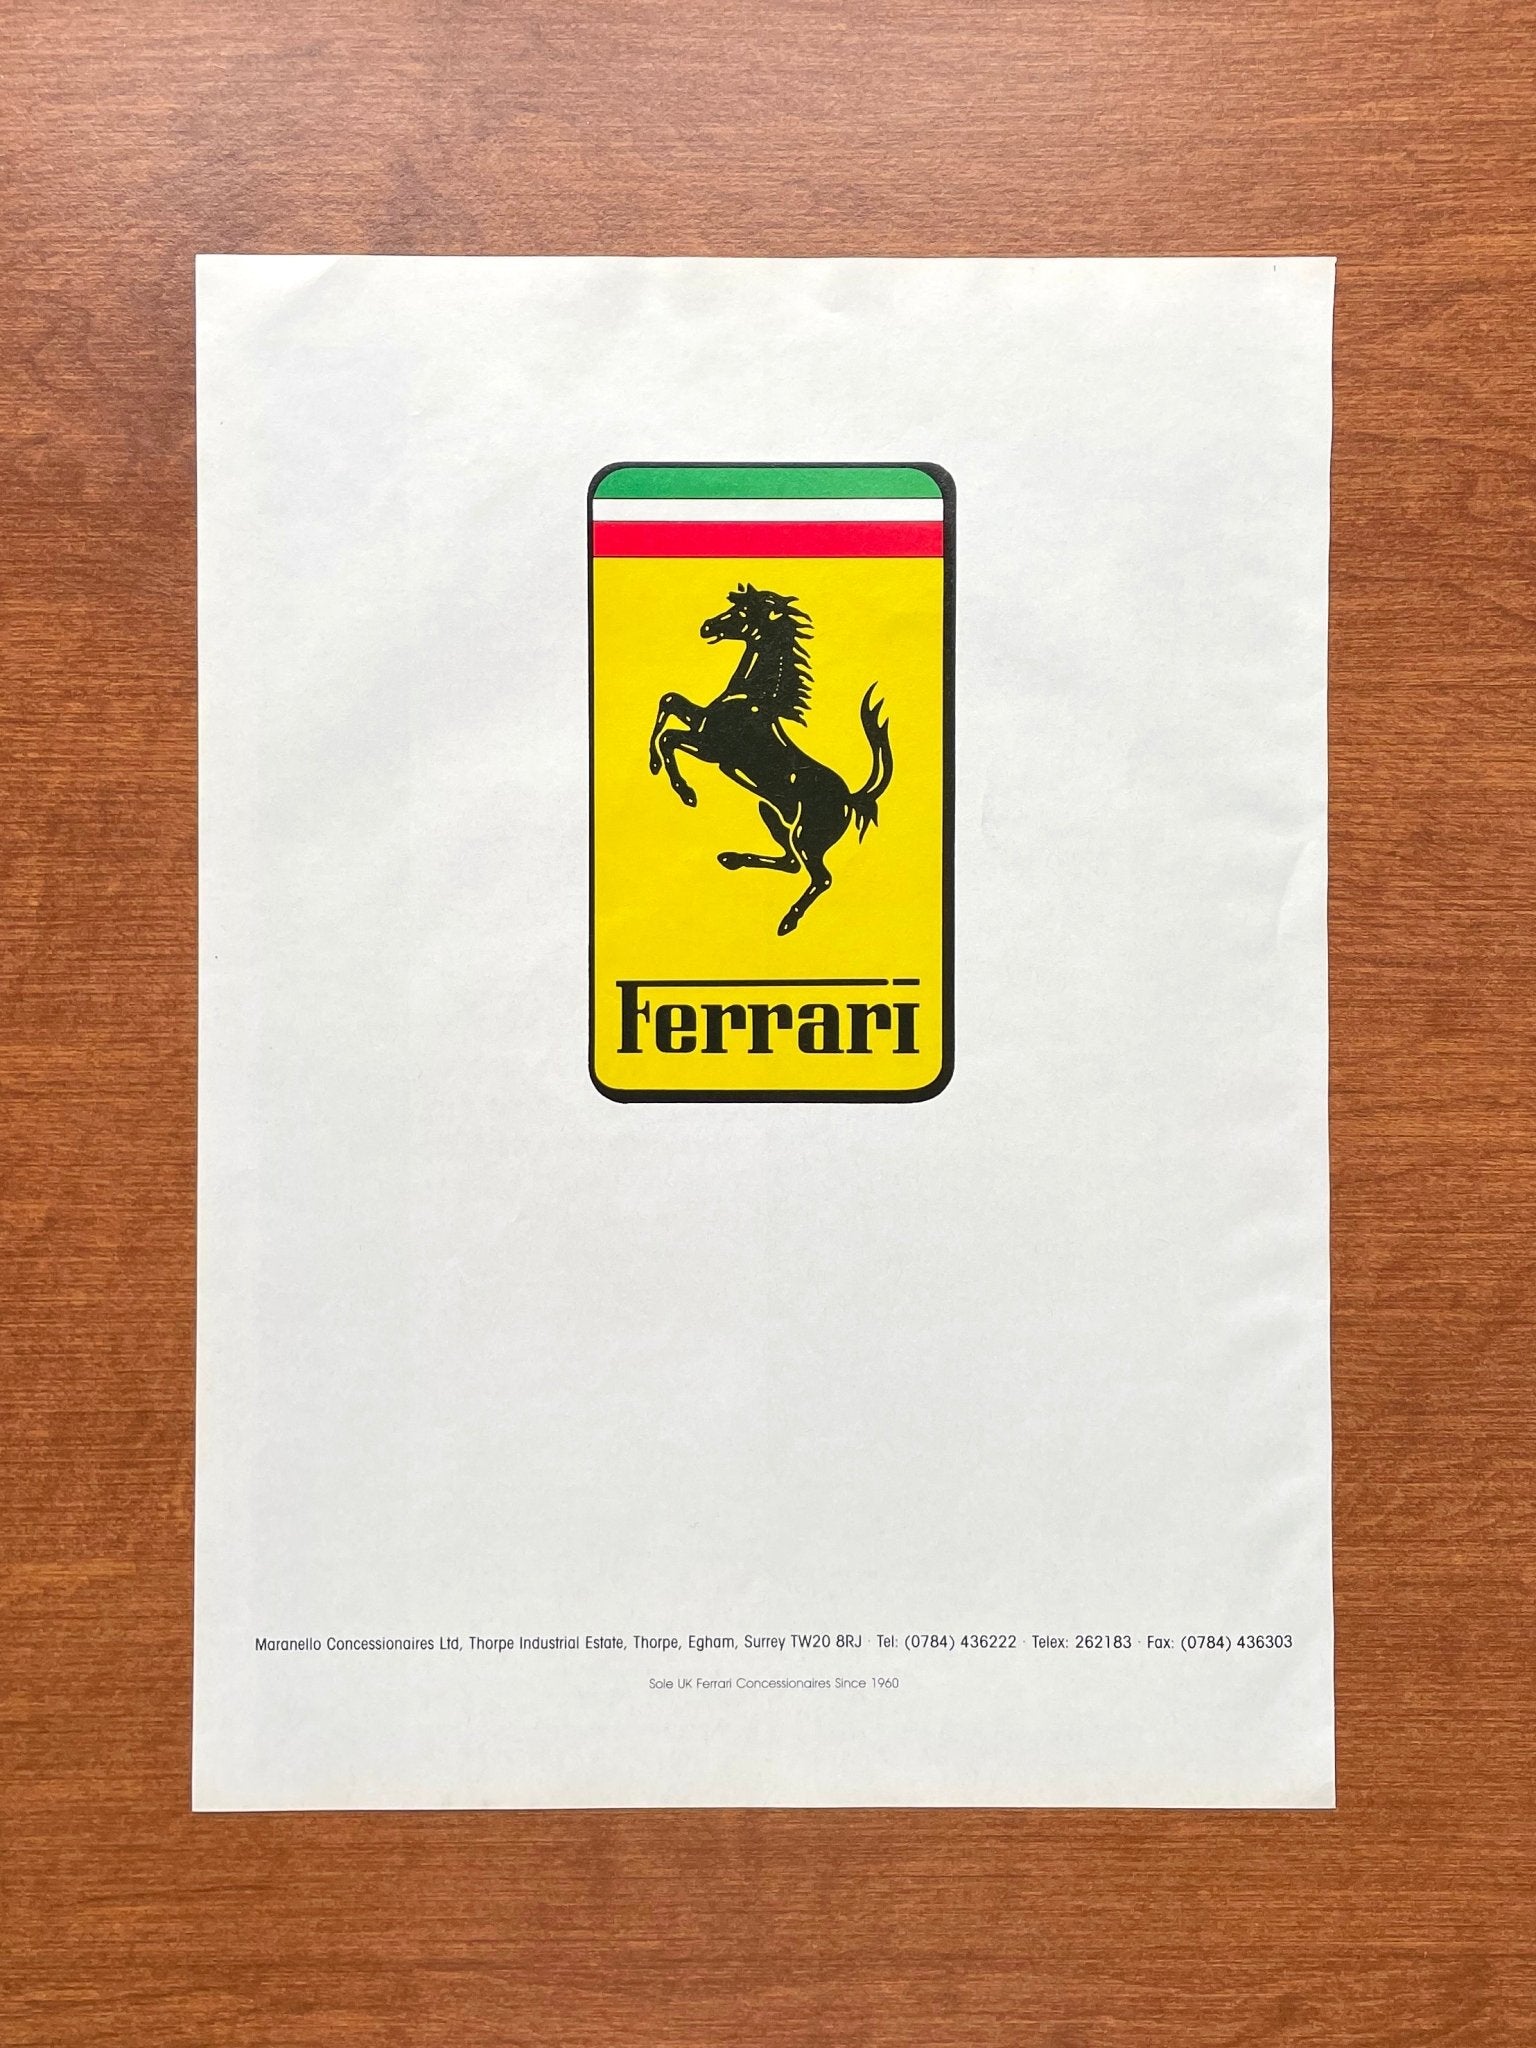 1989 Ferrari Hood Emblem Advertisement